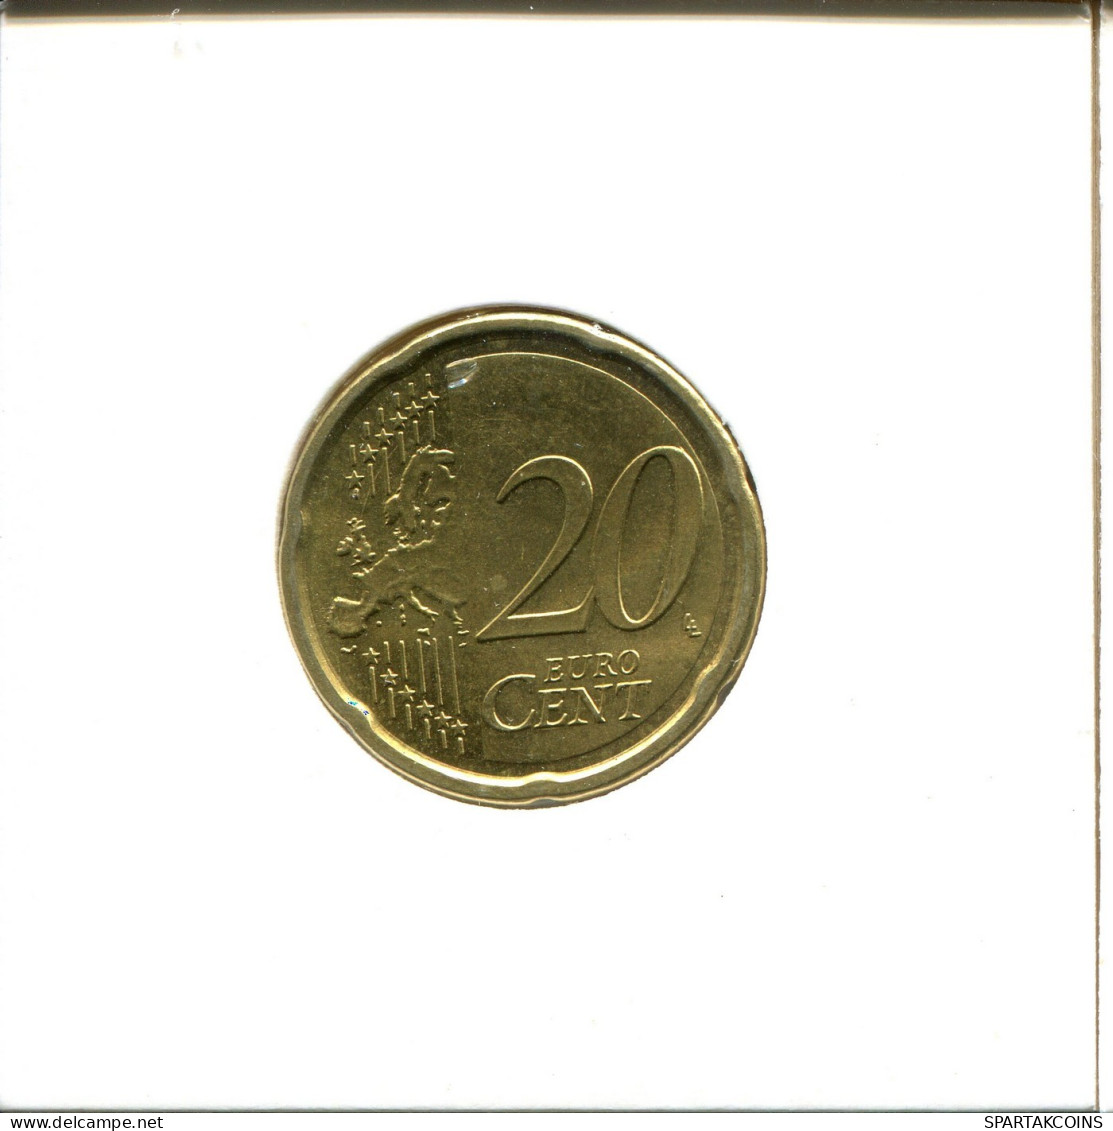 20 EURO CENTS 2009 ITALY Coin #EU243.U.A - Italie